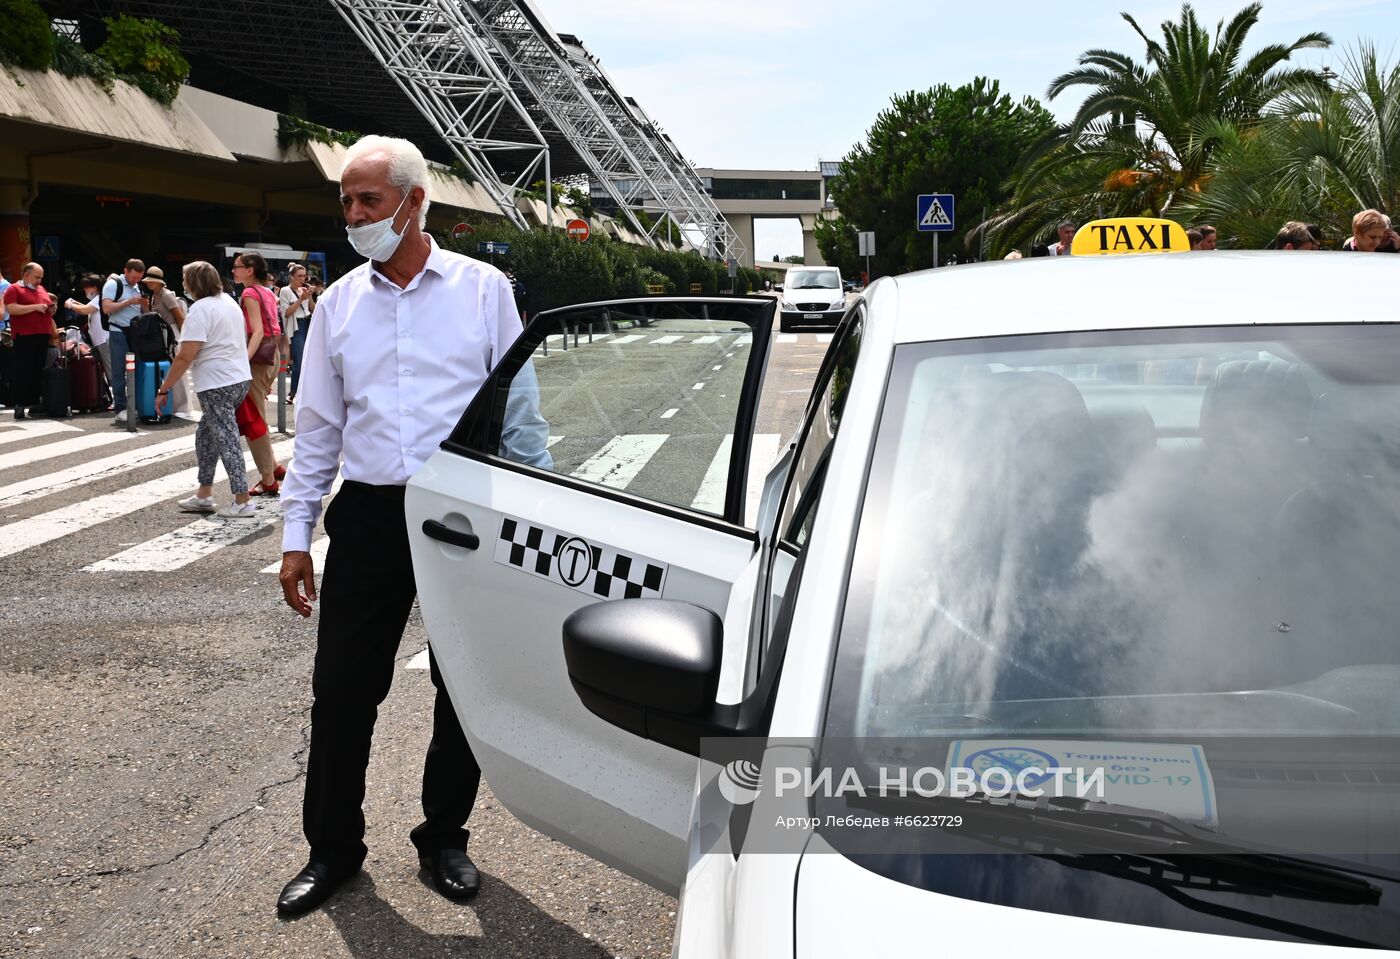 "Свободные от коронавируса" такси в Сочи